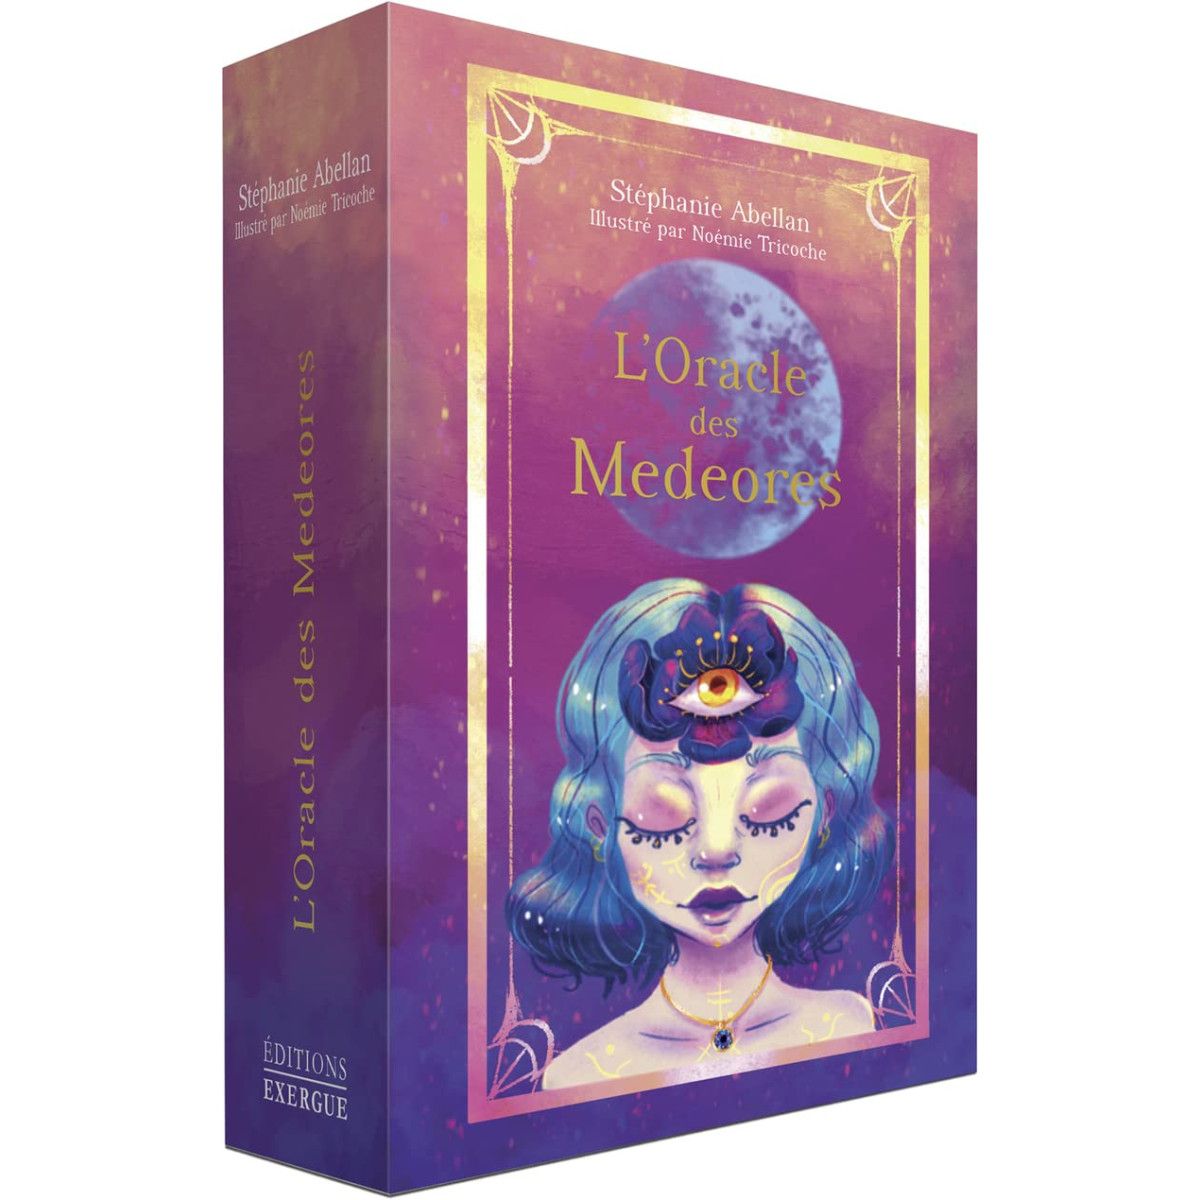  L'Oracle des Medeores - Abellan, Stéphanie, Tricoche, Noémie -  Livres